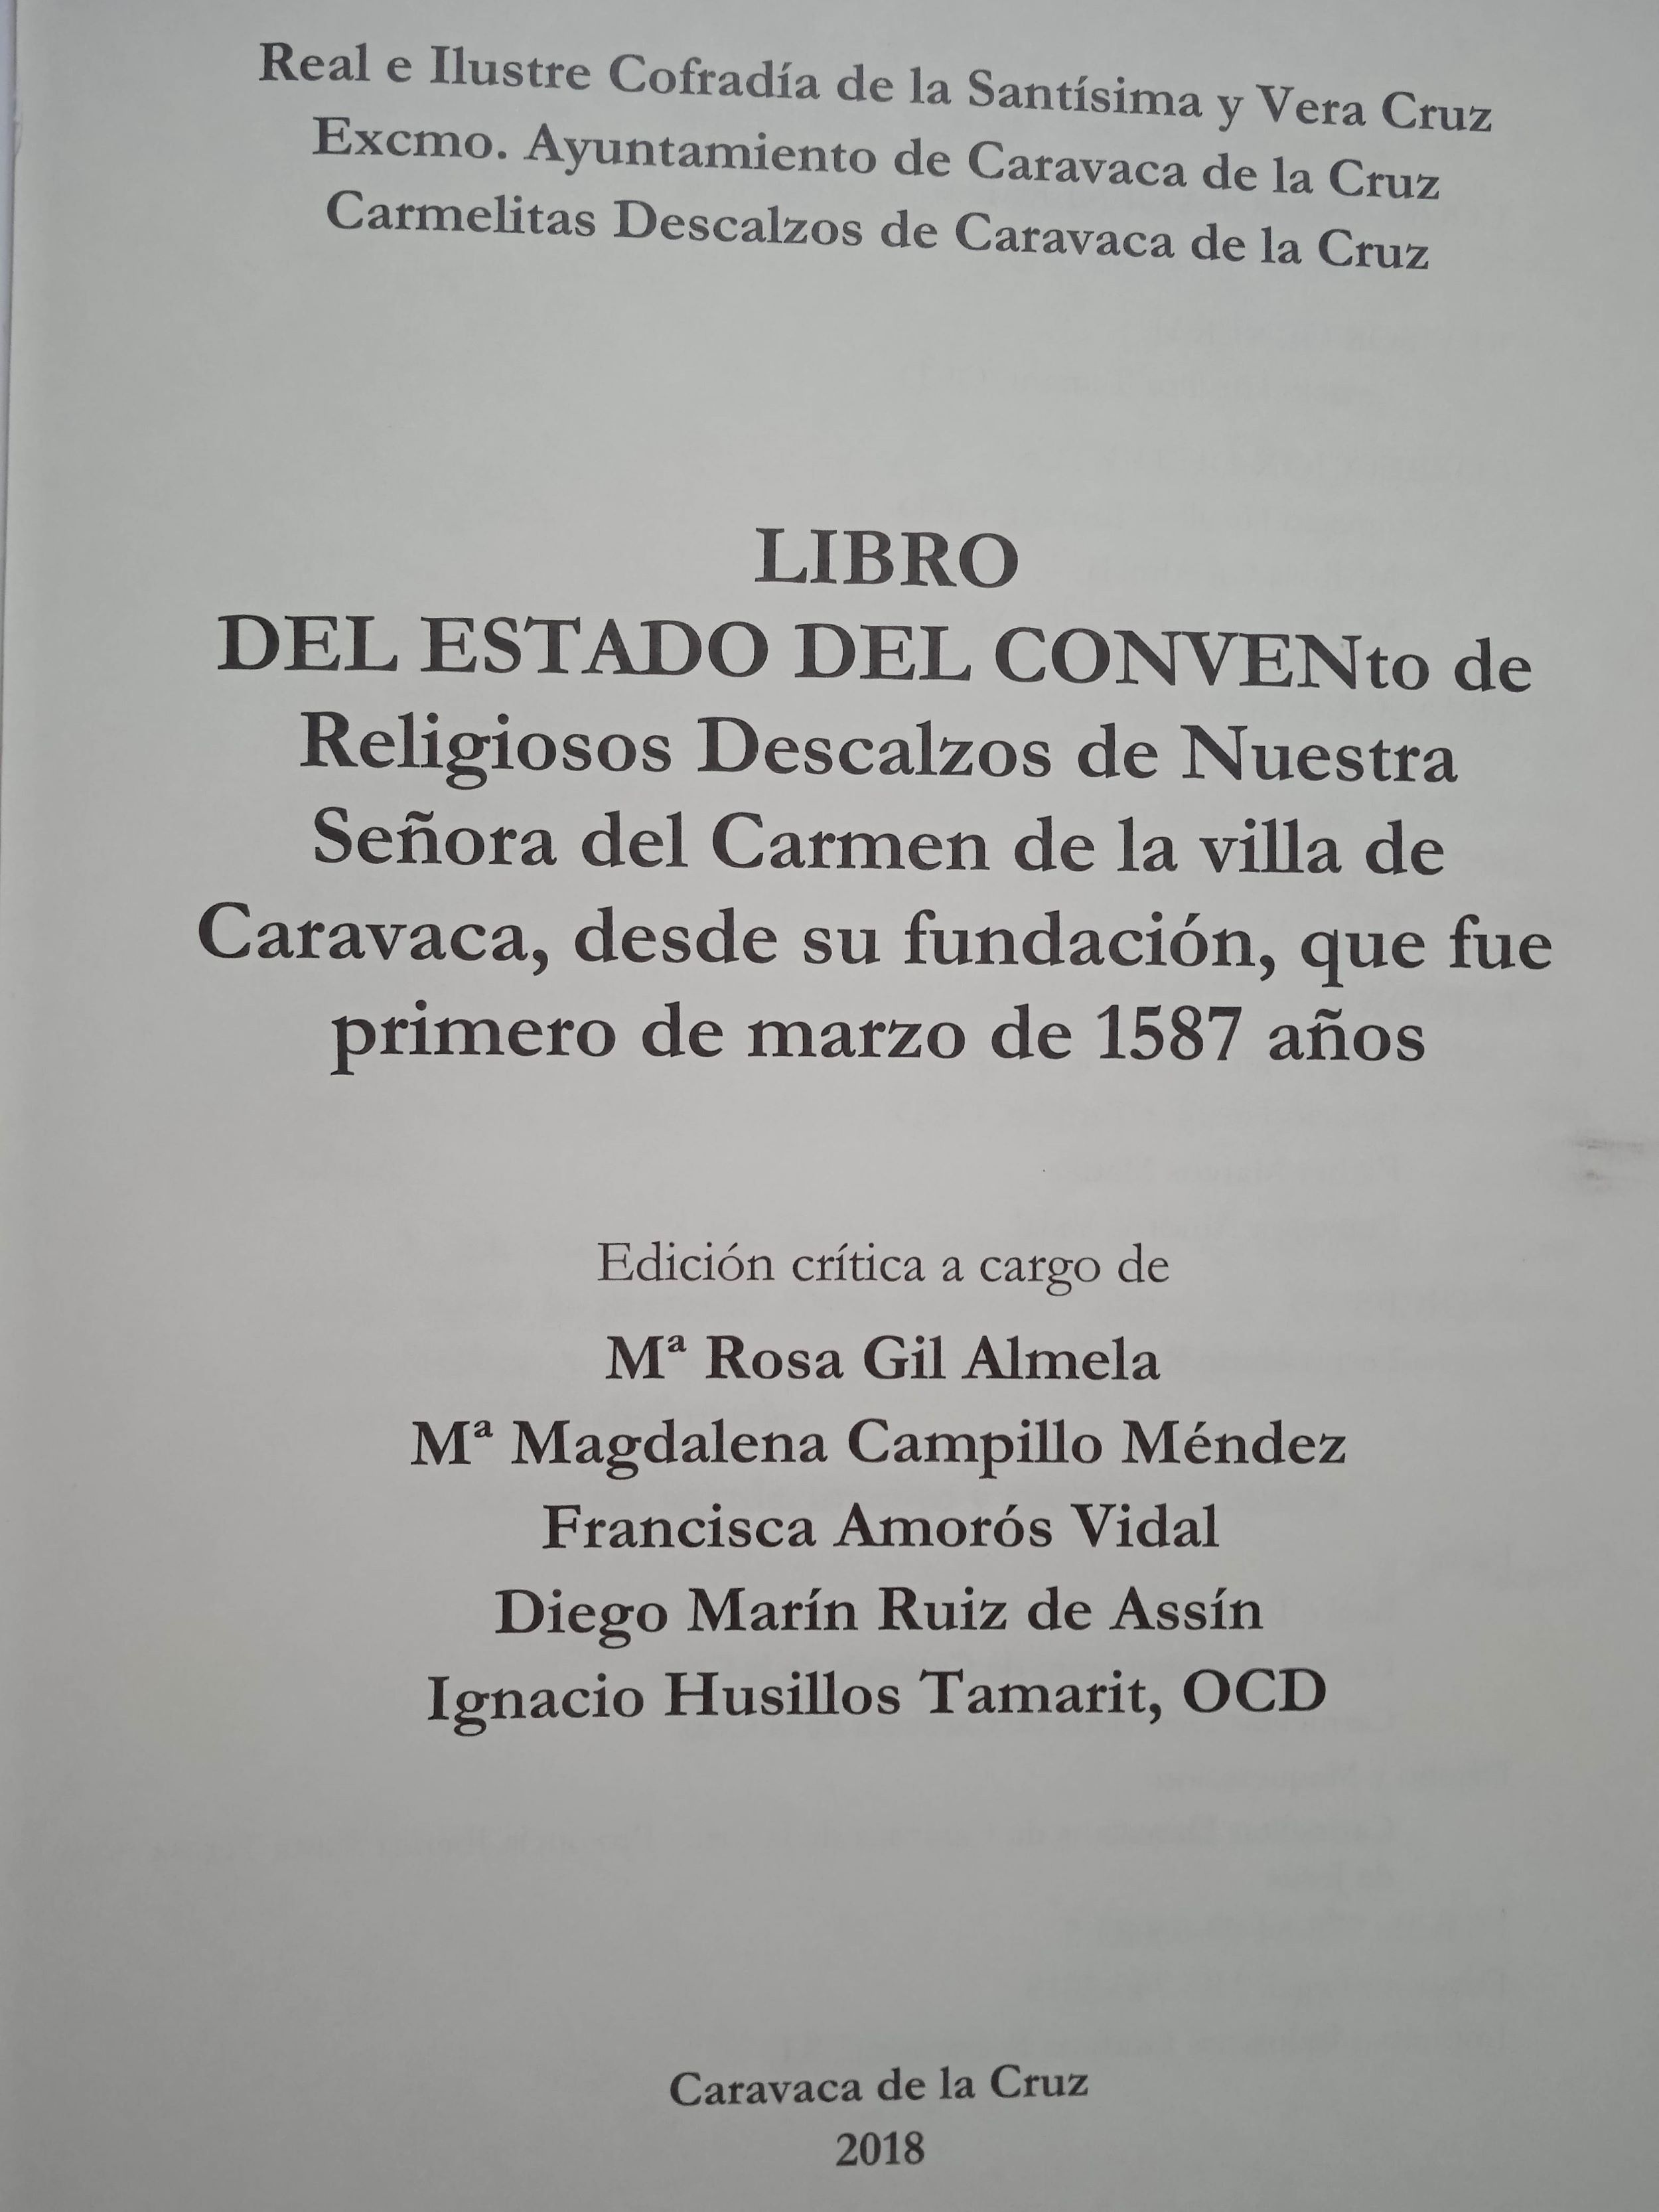 Imagen de portada del libro Libro del estado del convento de Religiosos Descalzos de Nuestra Señora del Carmen de la villa de Caravaca, desde su fundación, que fue primero de marzo de 1587 años